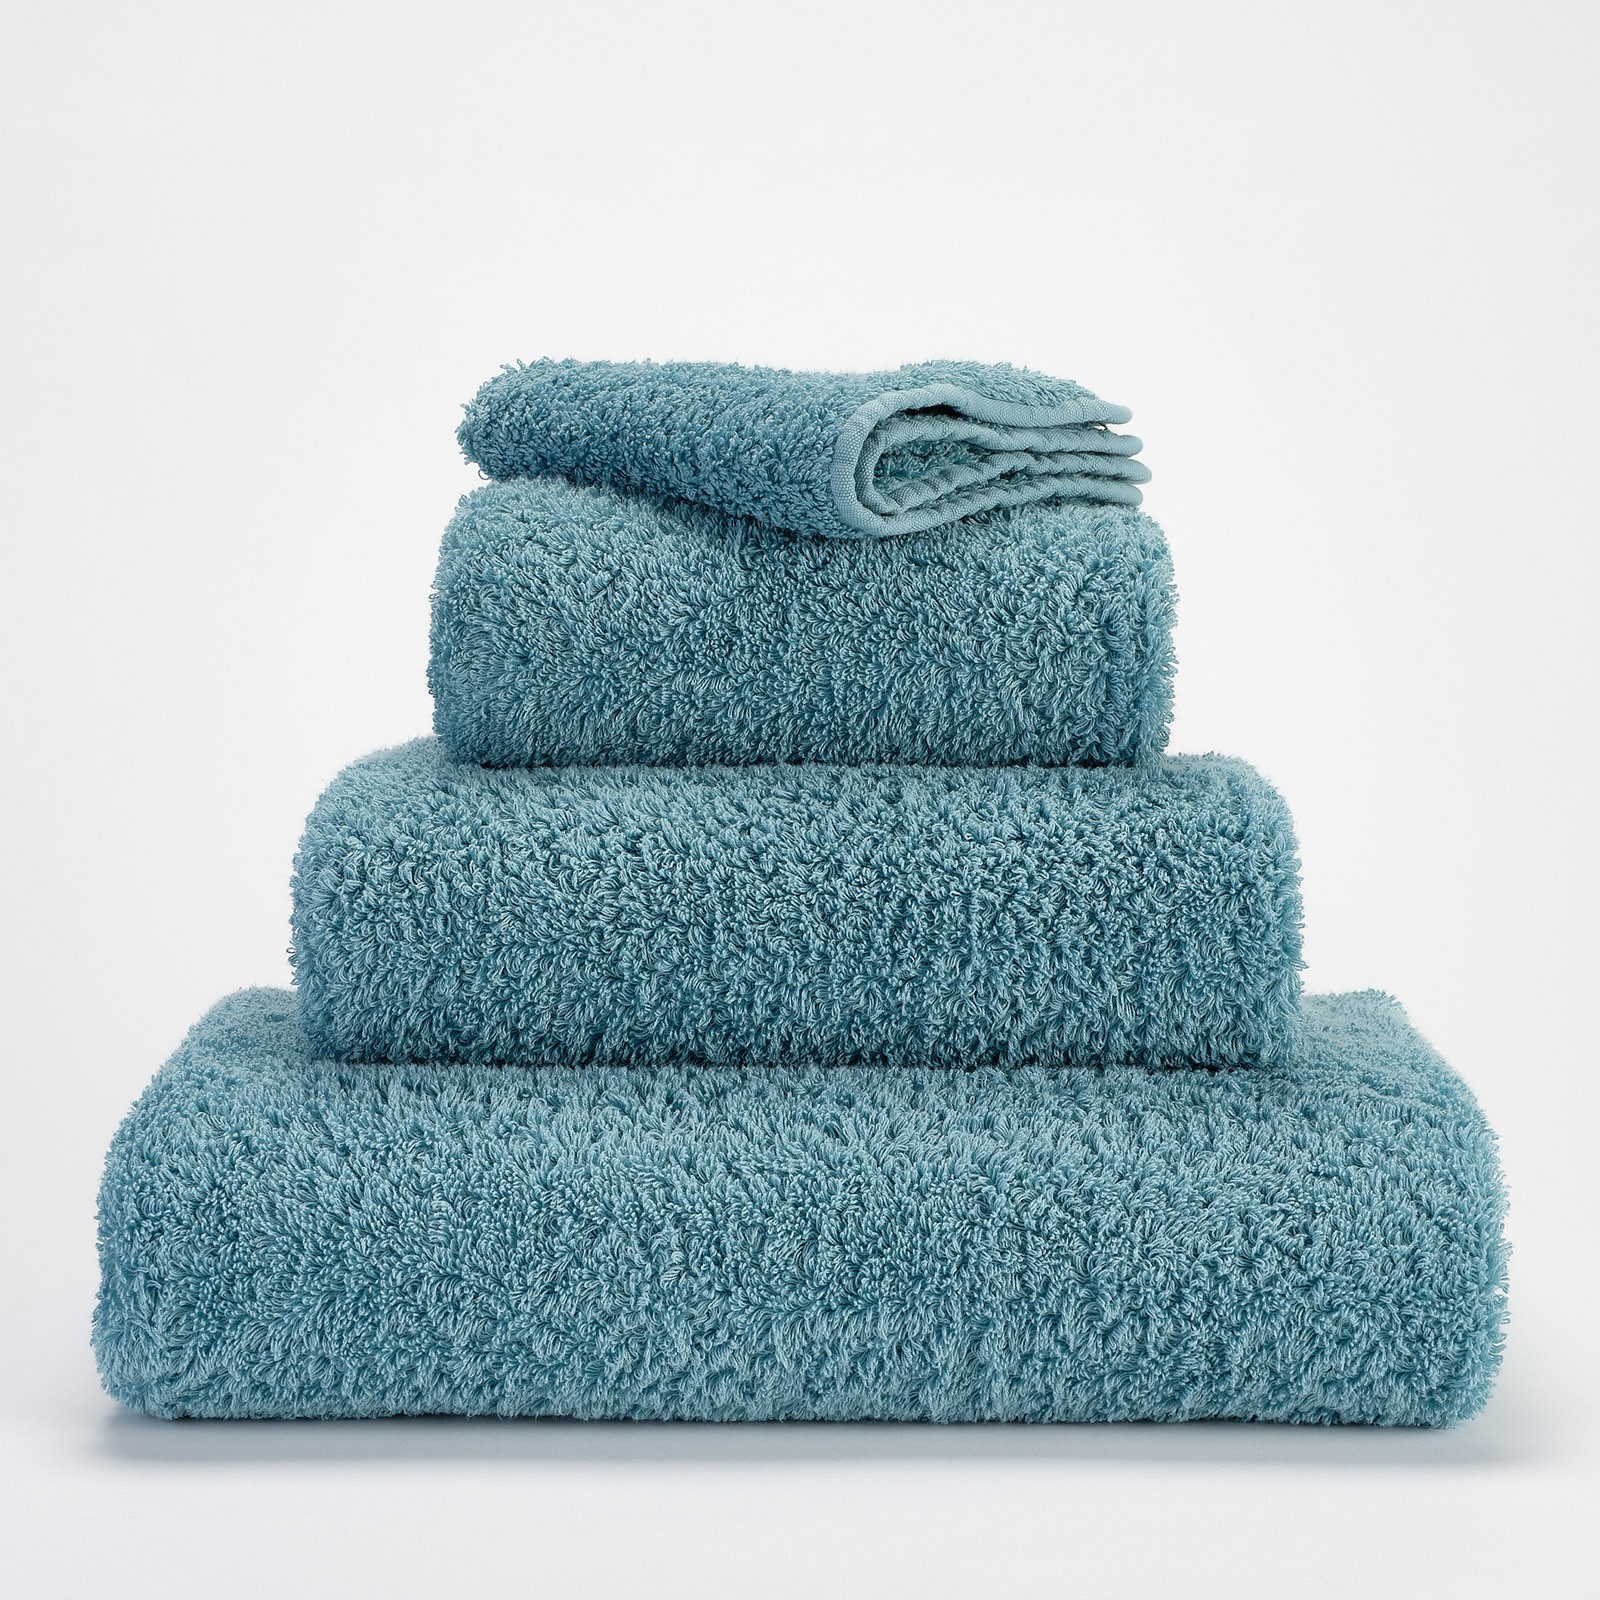 50 x 100 cm Ökotex 100 sleepling Set di 2 asciugamani in spugna della serie Marina 550 g/m² fenicottero con cordino e bordo 100% cotone 